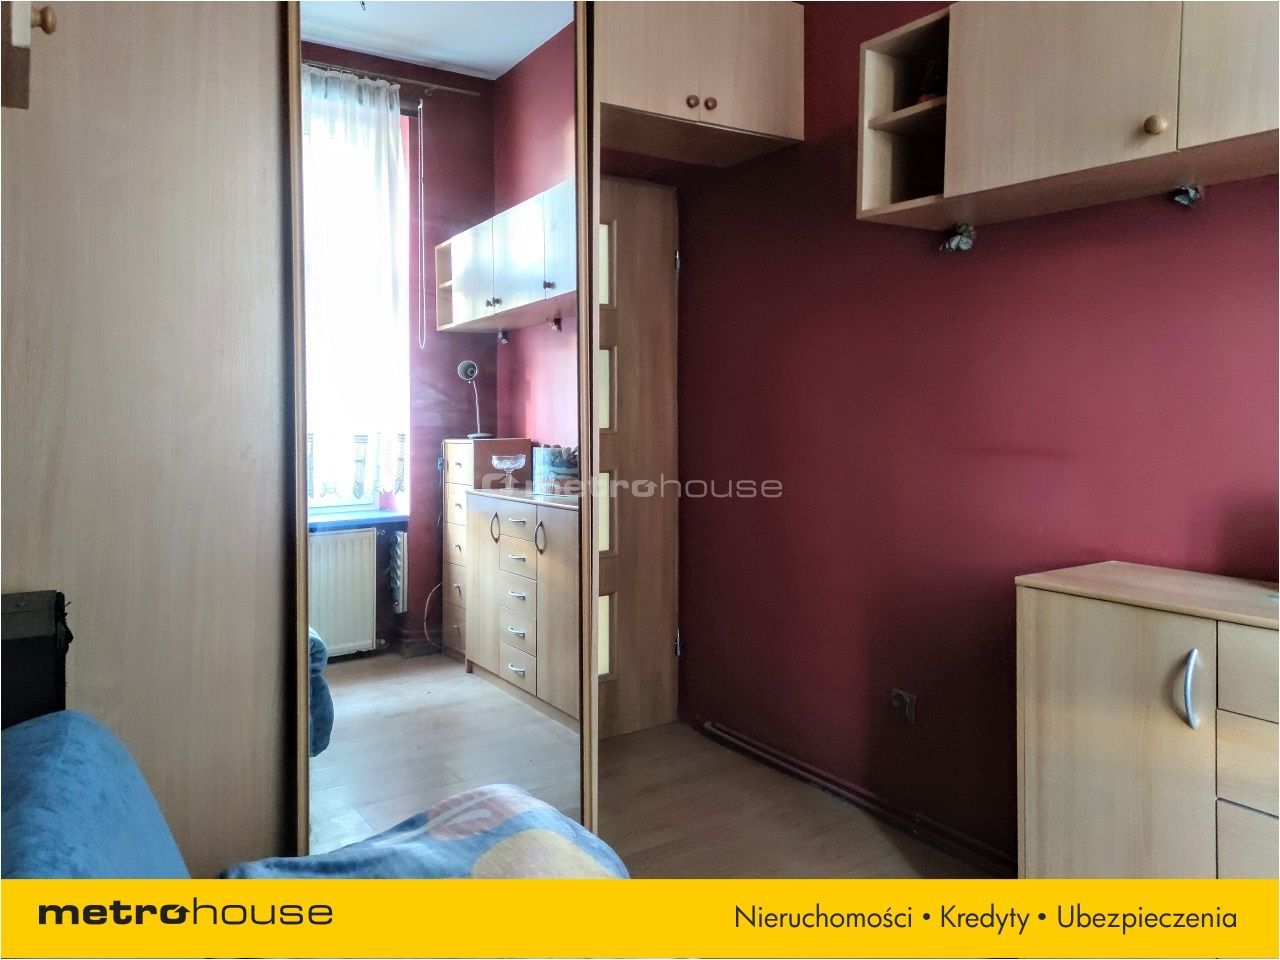 Mieszkanie na sprzedaż, Gdańsk, Nowy Port, 2 pokoje, 37 mkw, za 389000 zł: zdjęcie 93837346